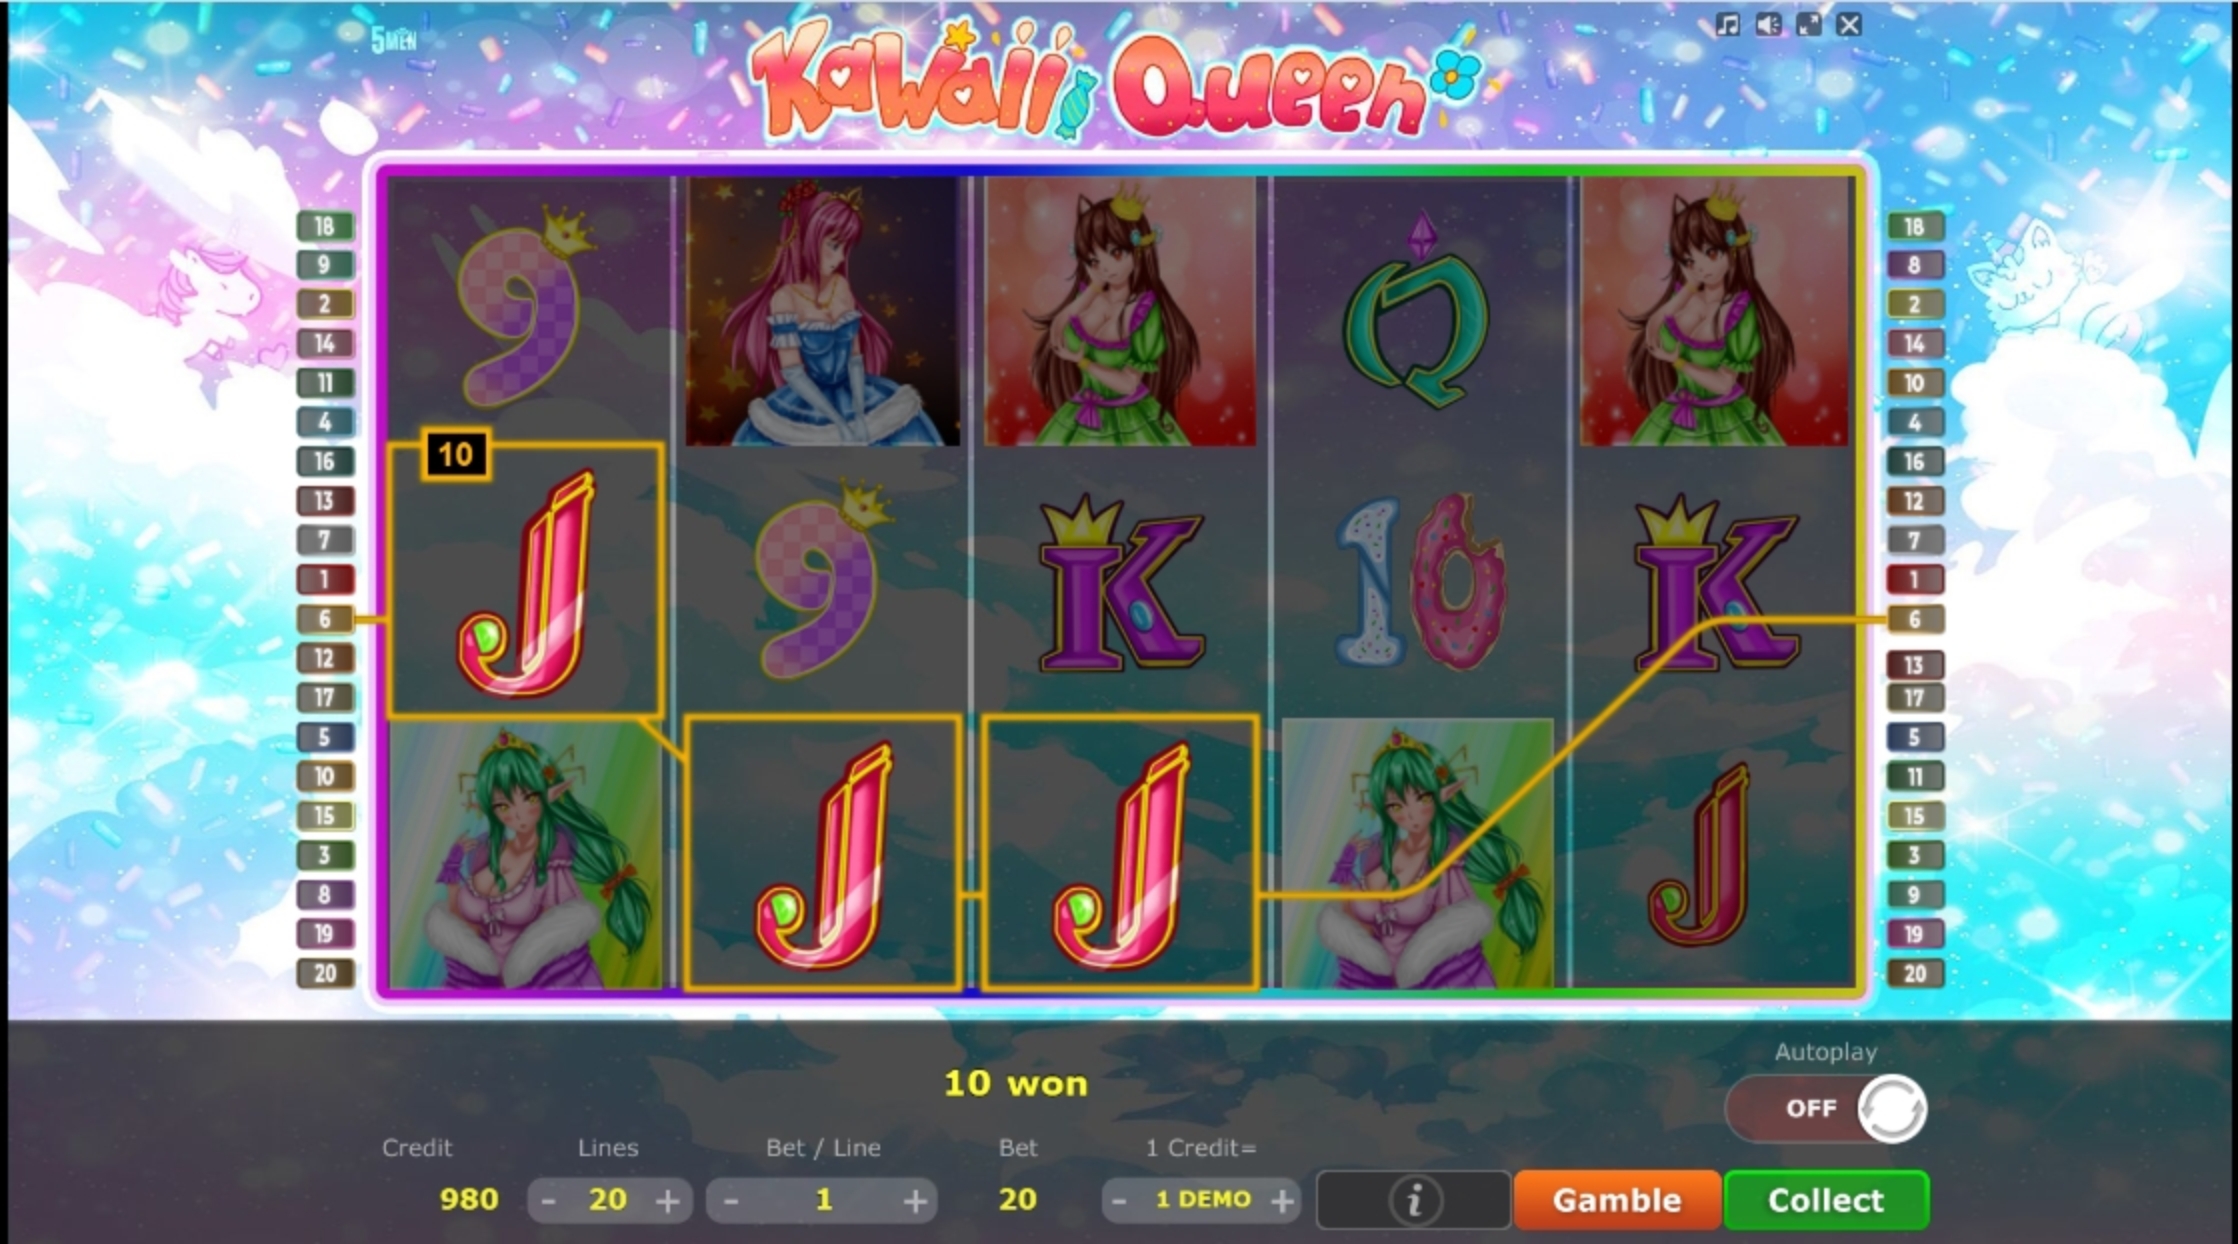 Win Money in Kawaii Queen Free Slot Game by Five Men Games